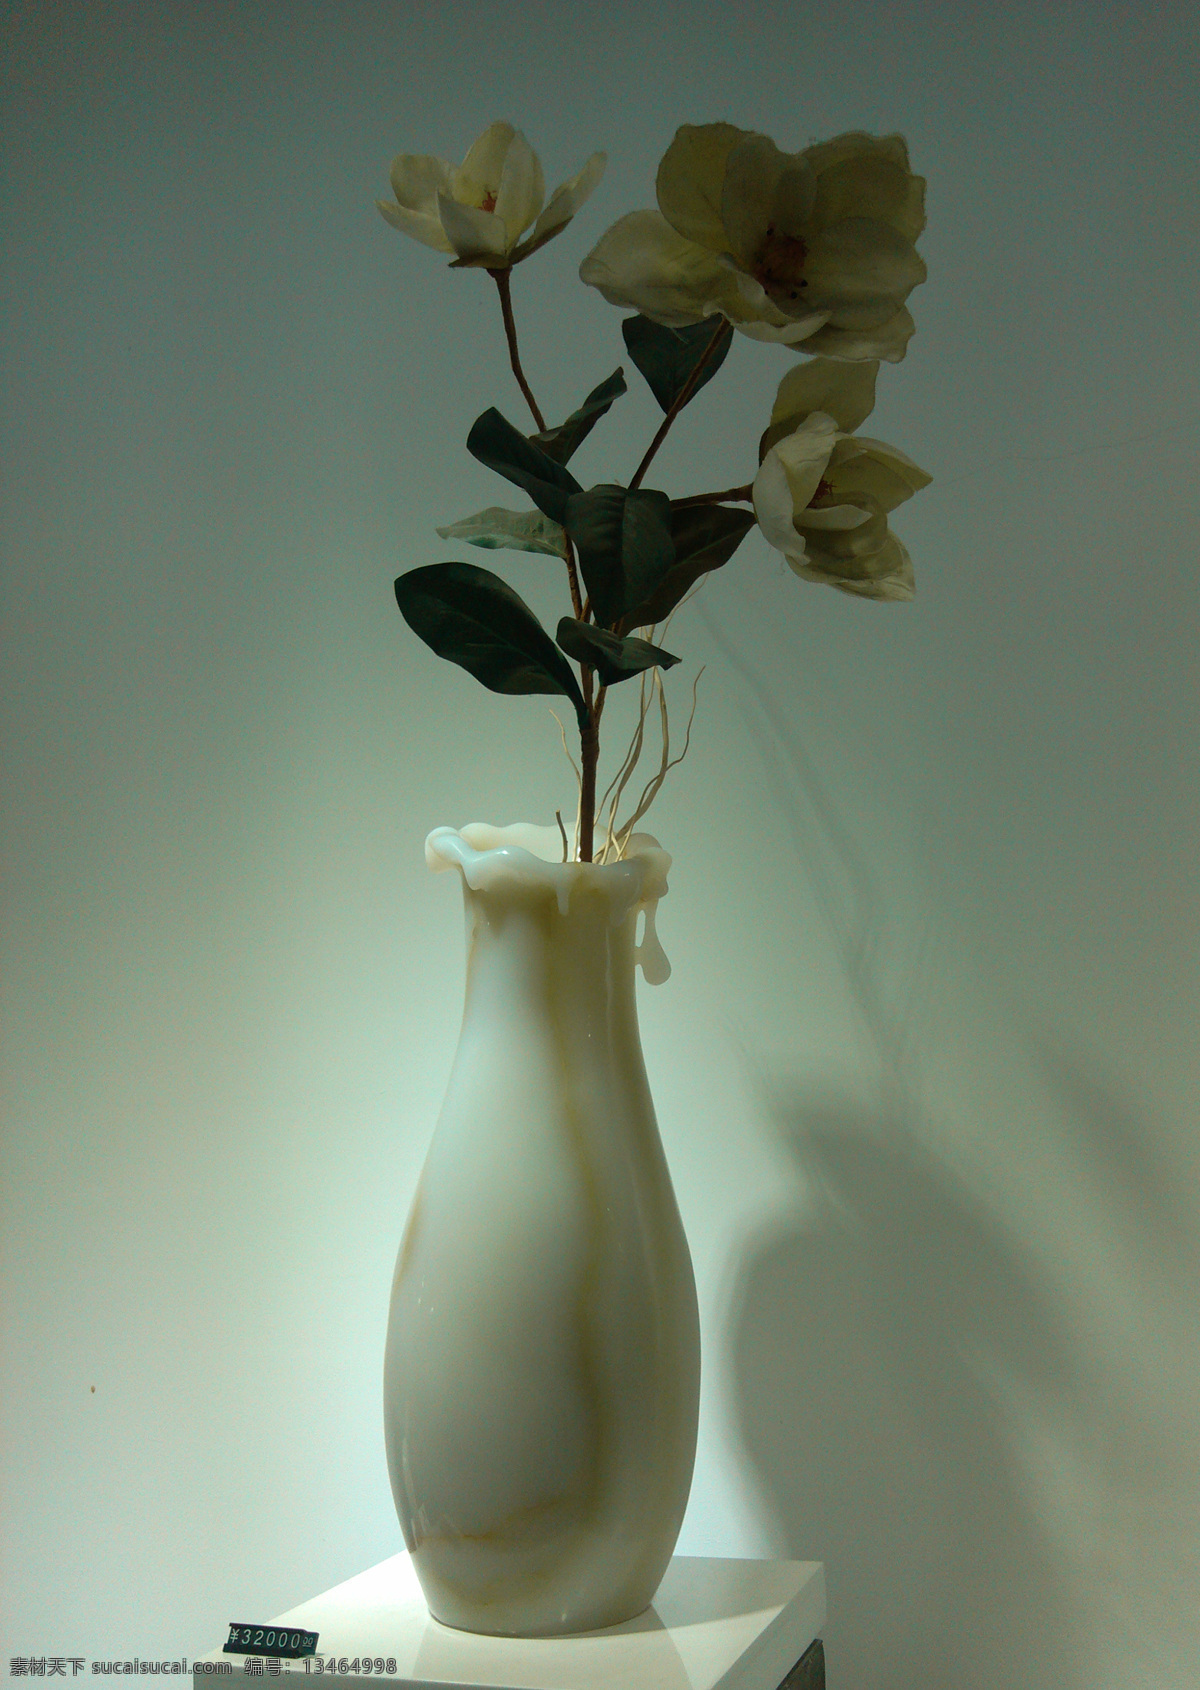 玉瓶拍摄 玉器 花 文化艺术